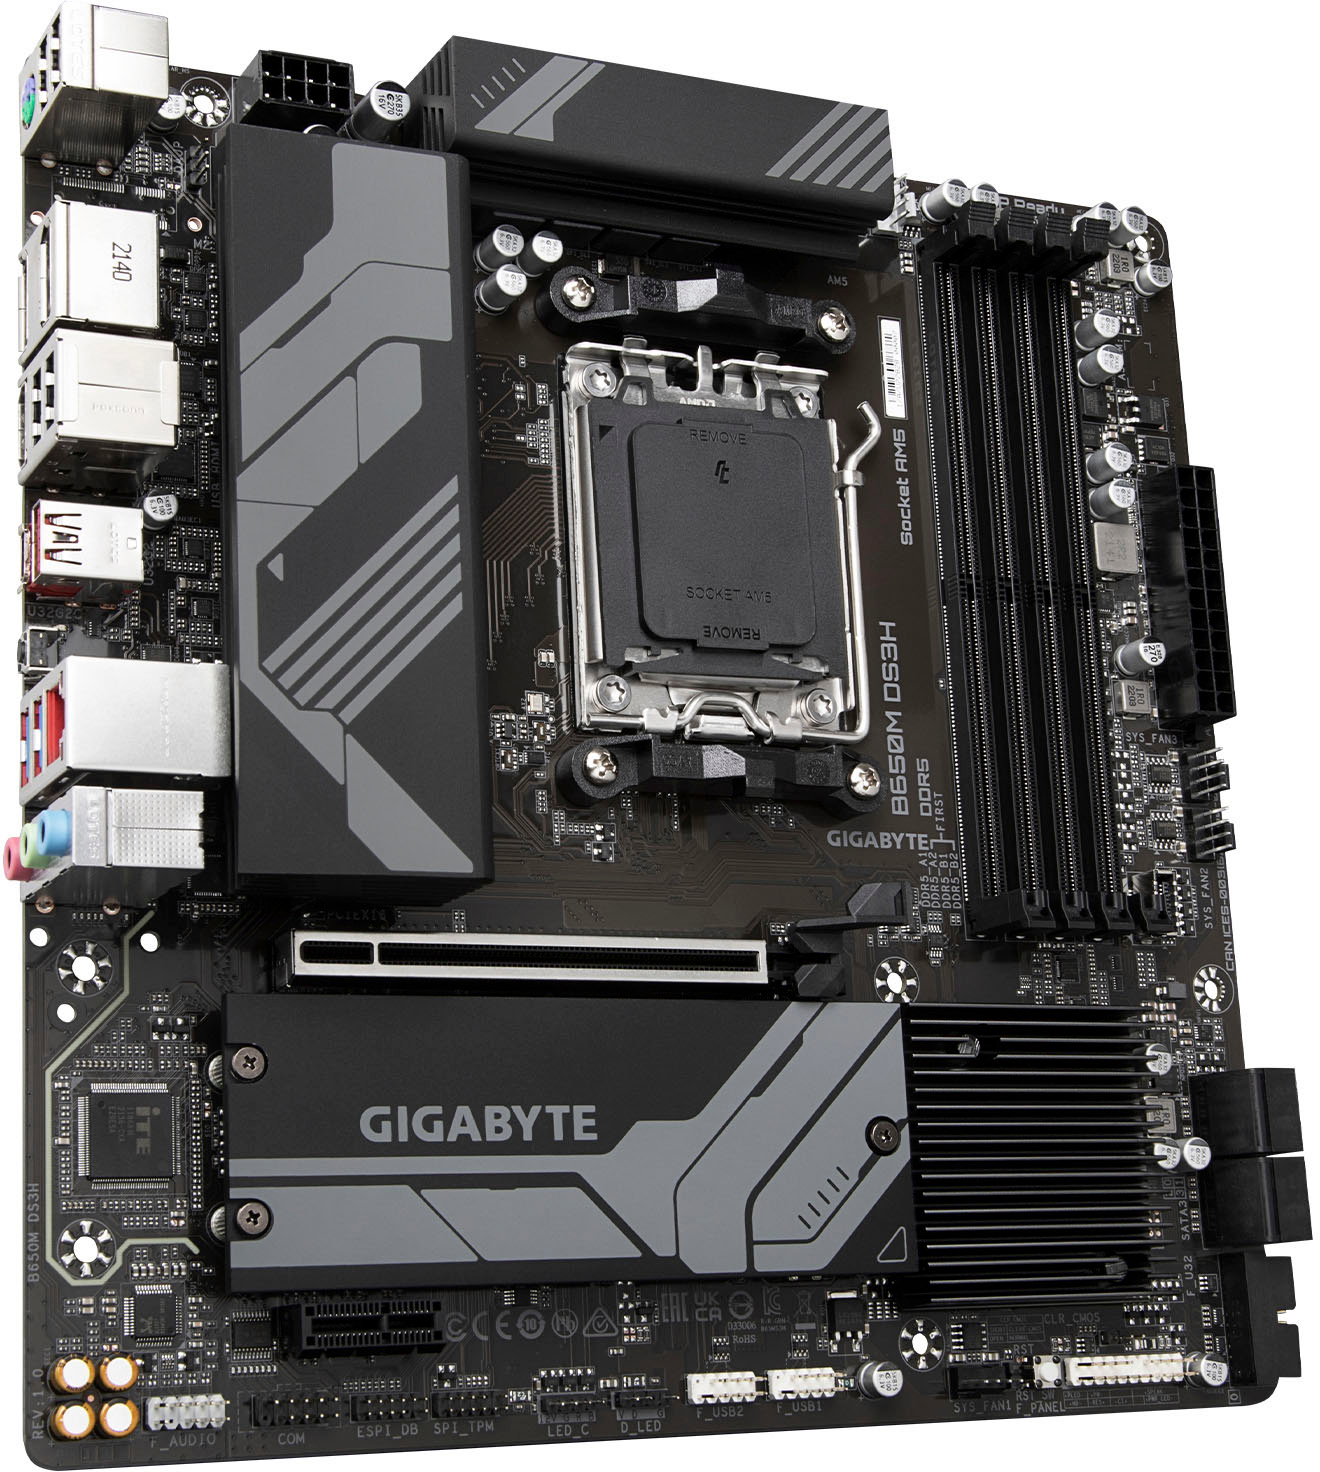 GIGABYTE AMD B350 Socket AM4 Motherboard Pictured